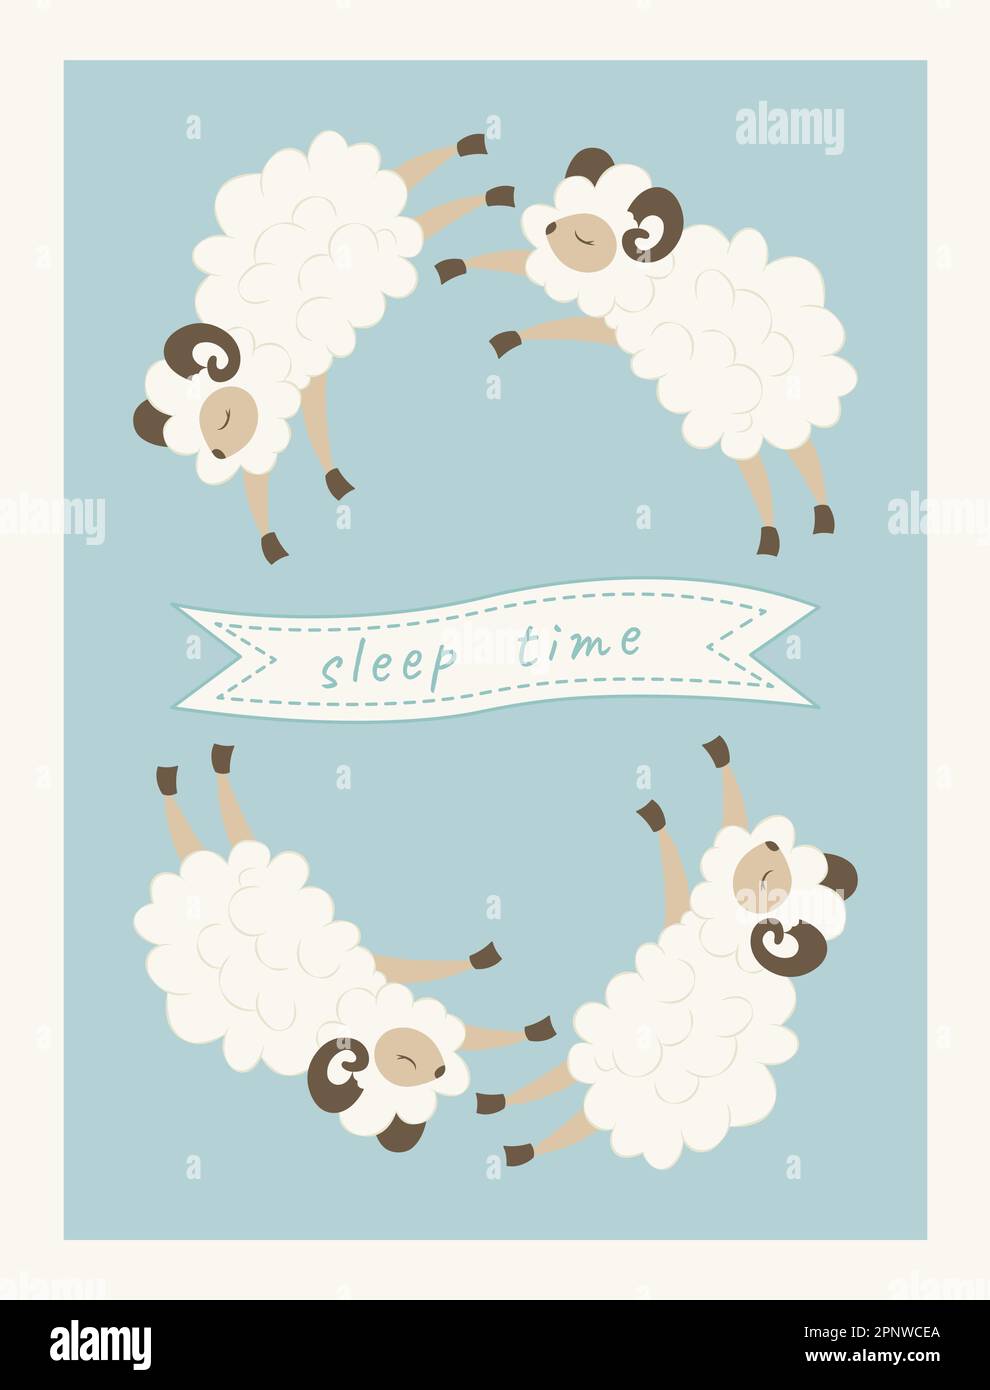 Lustige flauschige Schafe fliegen über den Himmel. Zählen Sie nachts Lämmer. Poster für die Schlafzeit im Kinderzimmer. Titelseite für ein Kinderalbum, Babybuch Stock Vektor